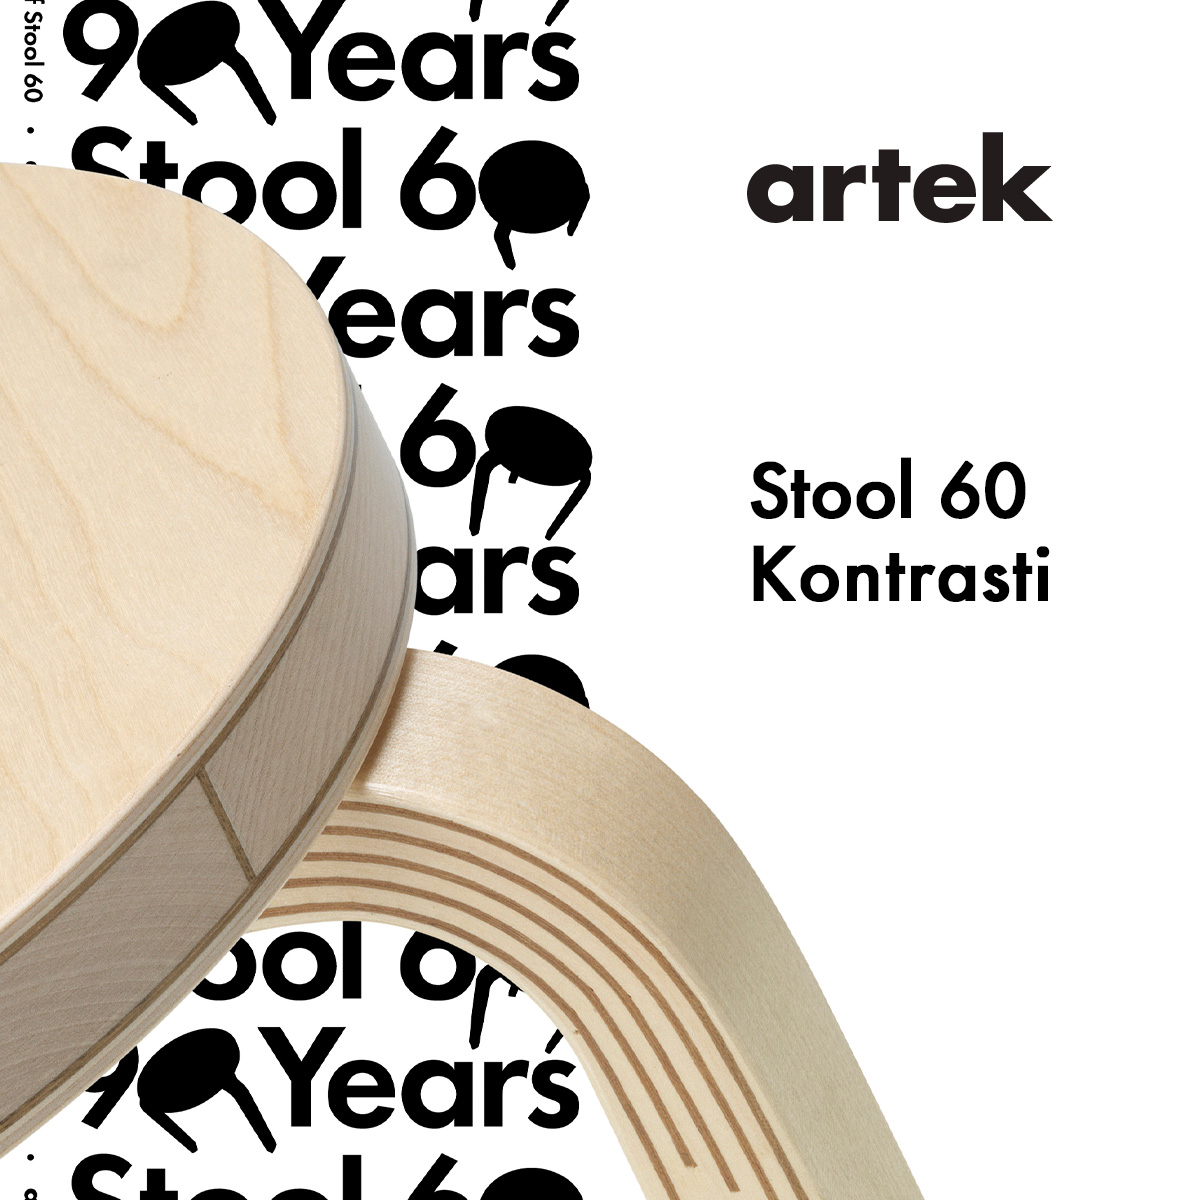 Artek アルテック STOOL 60 Kontrasti スツール60 コントラスティ 90周年記念 期間限定 特別モデル